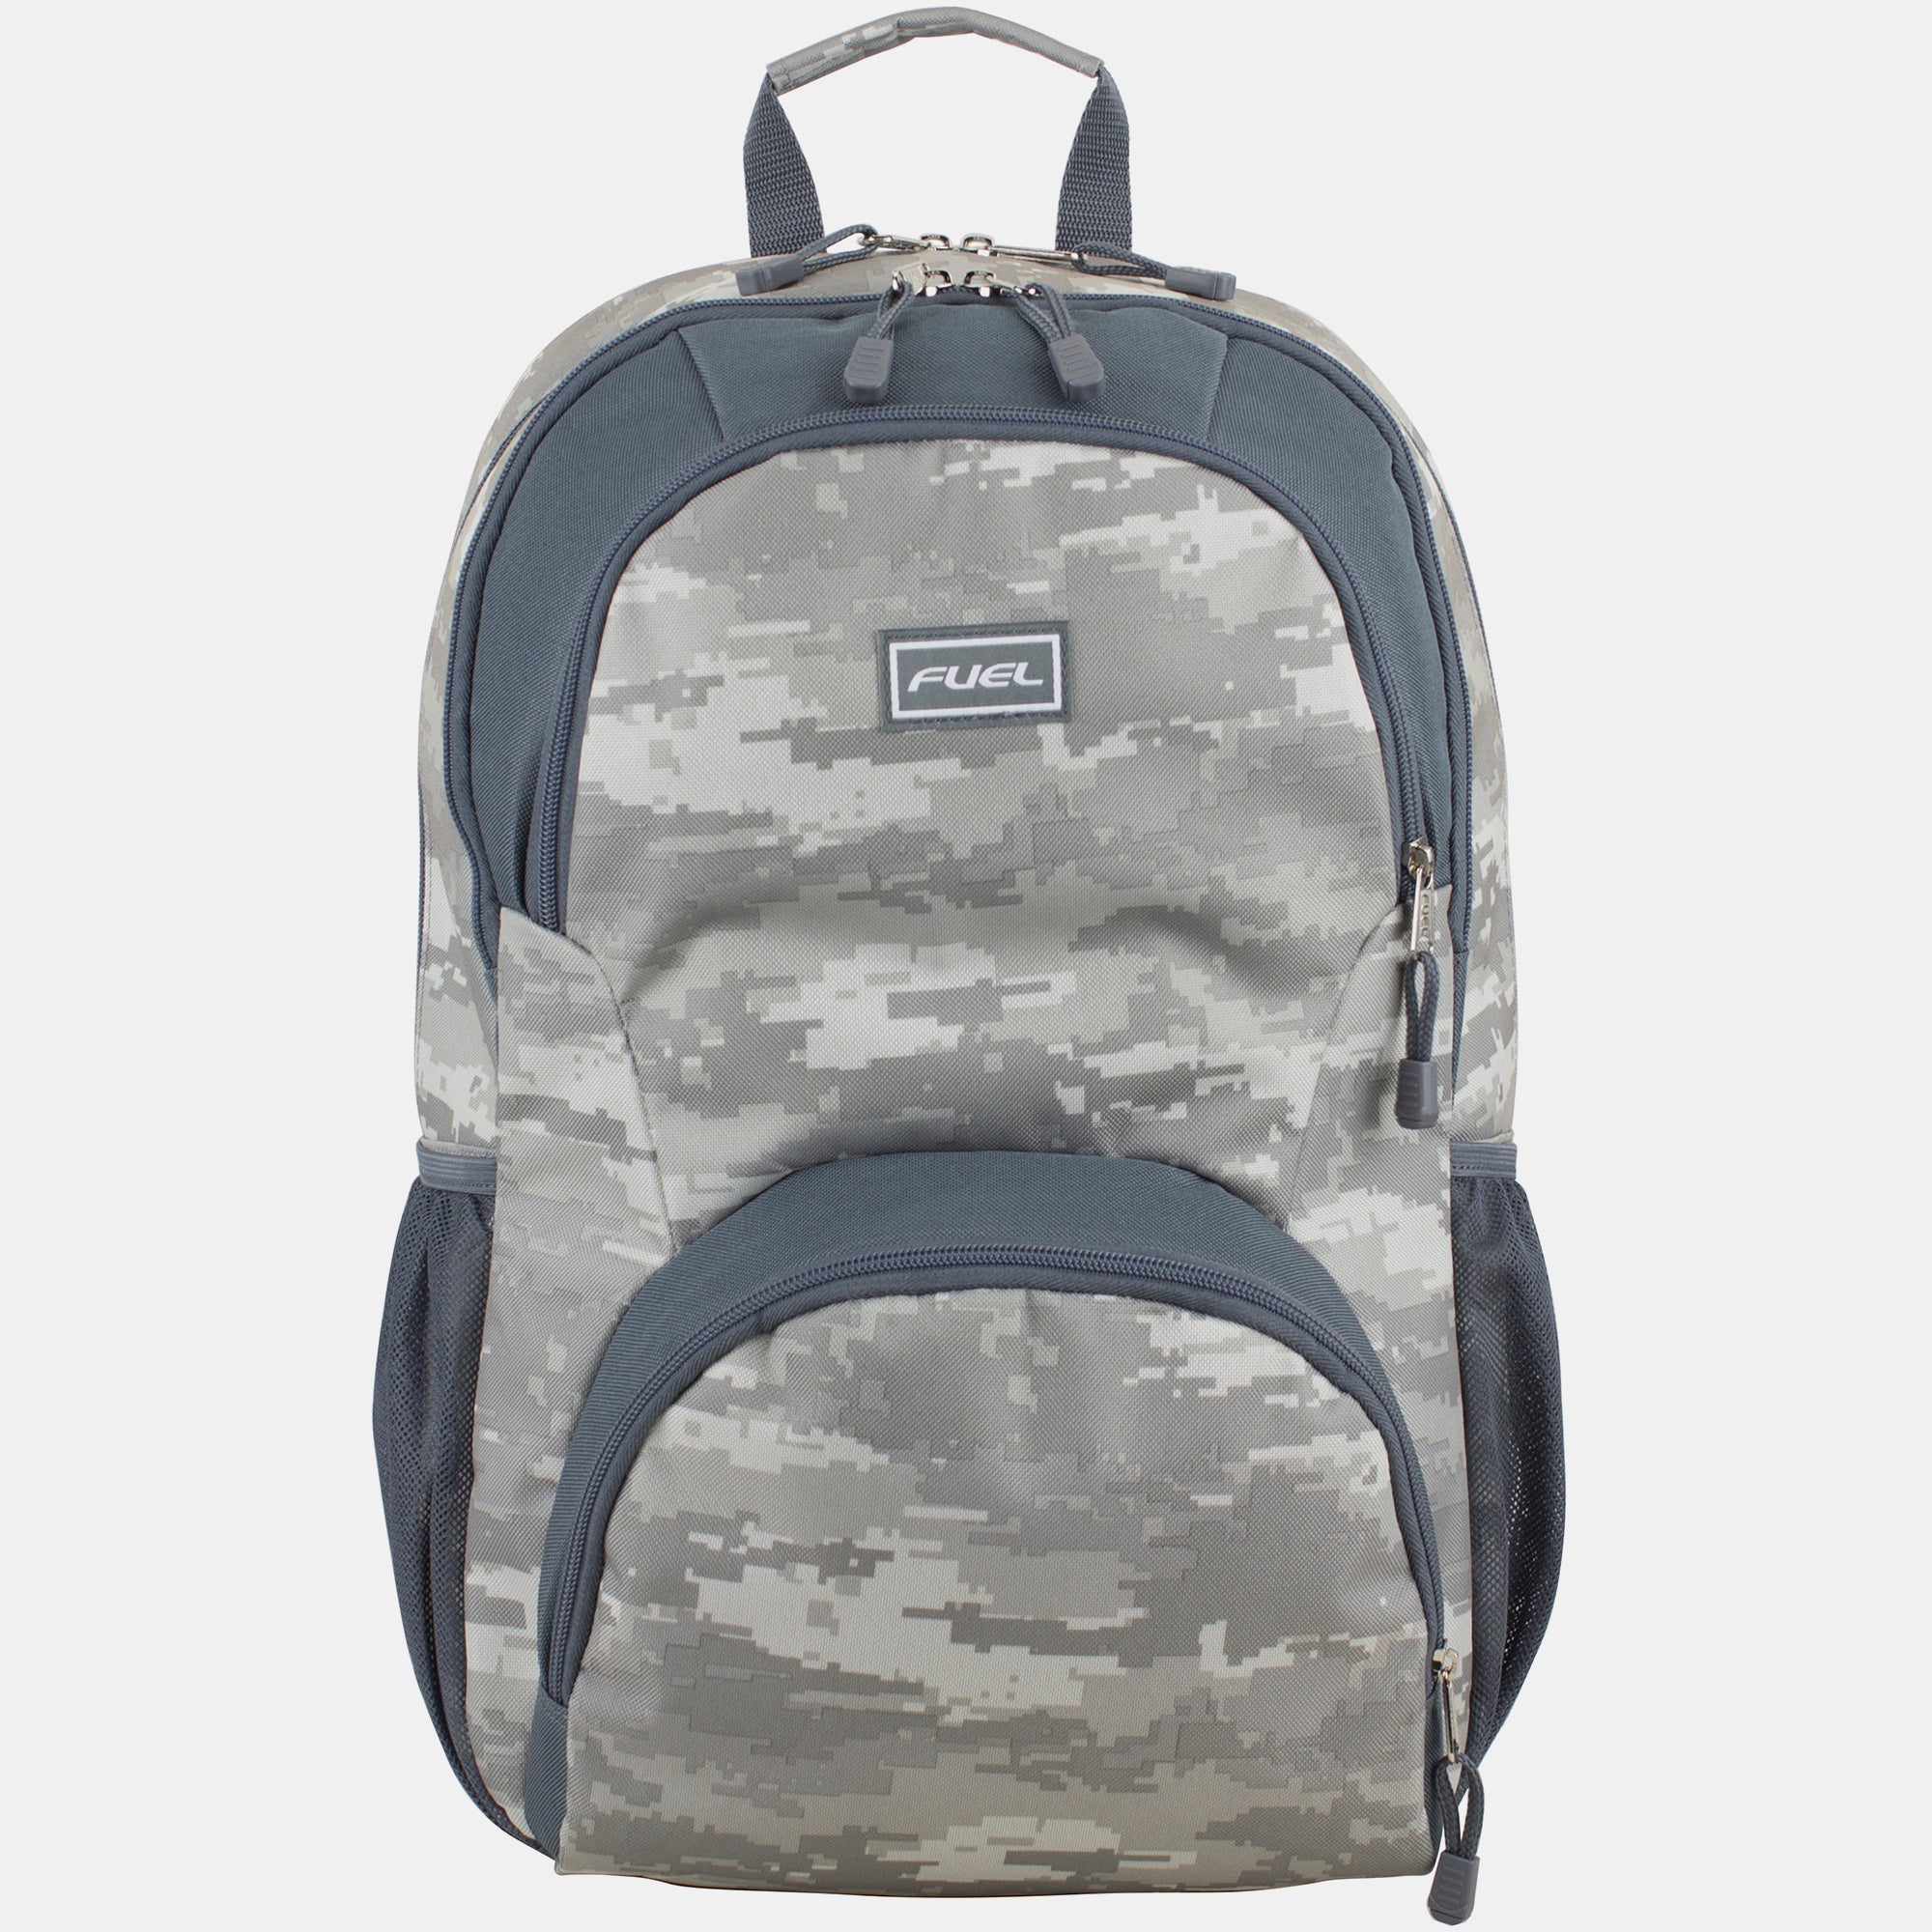 Fuel Valor Backpack